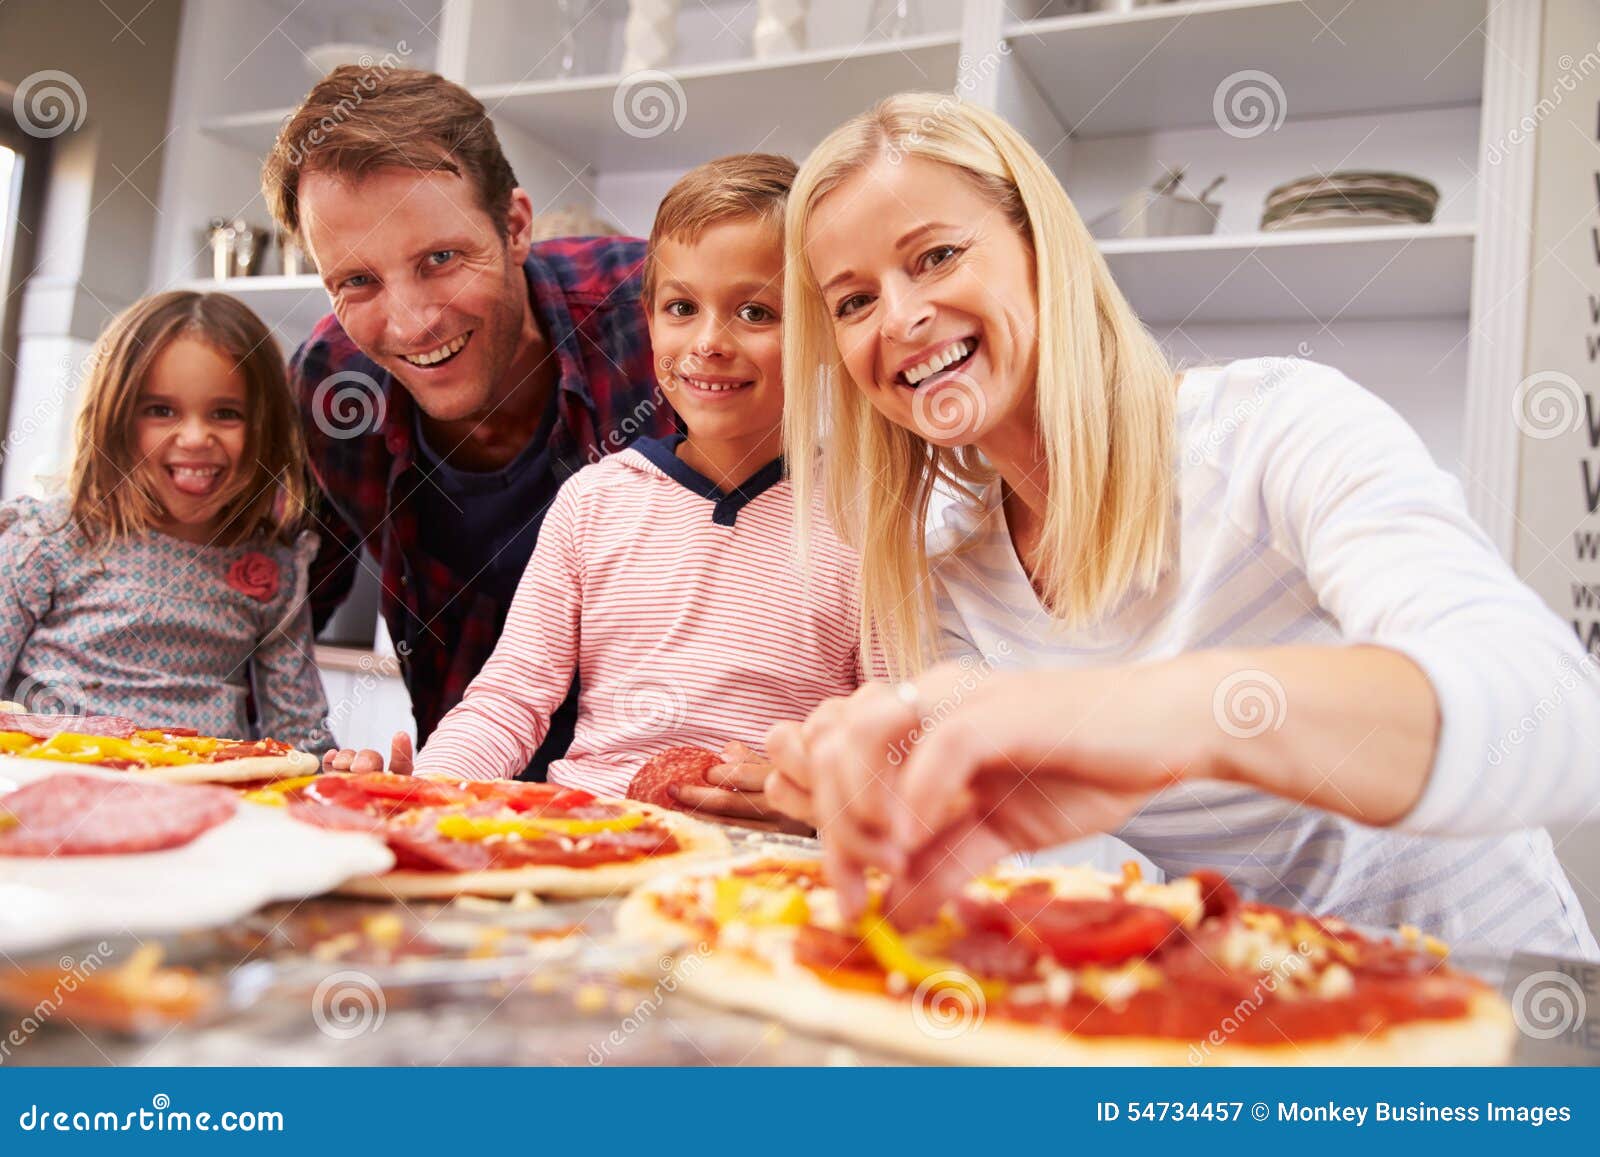 фотосессия с пиццей семейная фото 11